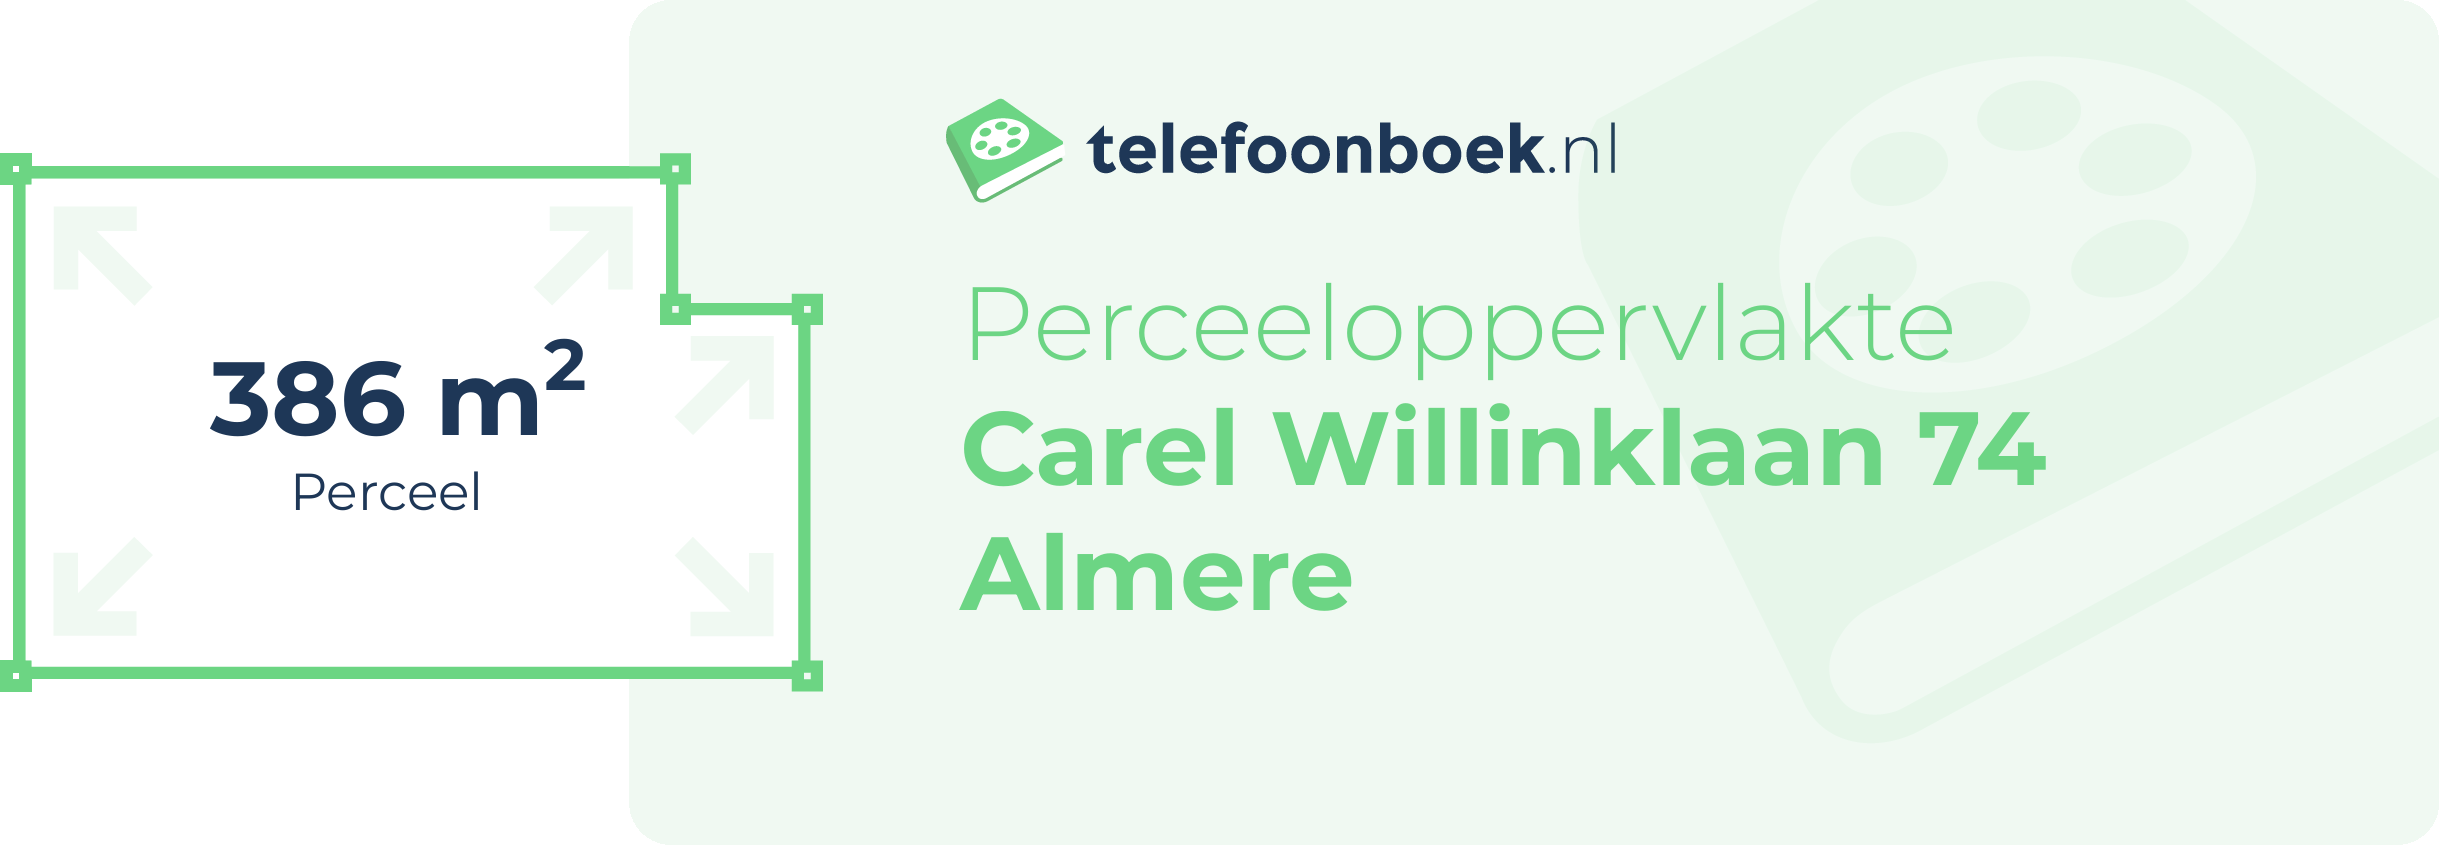 Perceeloppervlakte Carel Willinklaan 74 Almere